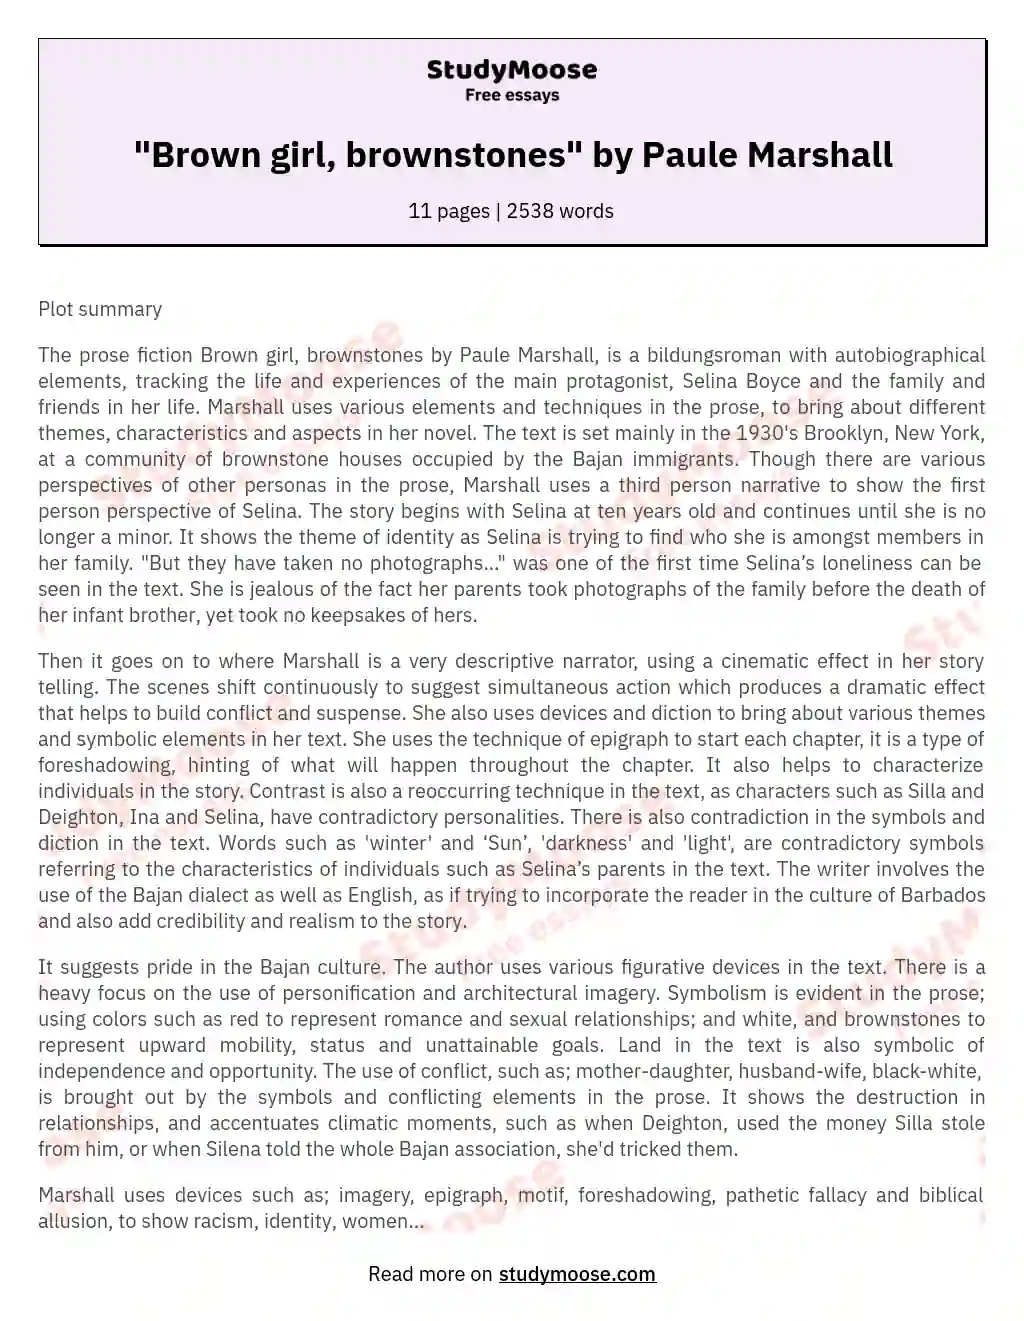 "Brown girl, brownstones" by Paule Marshall essay